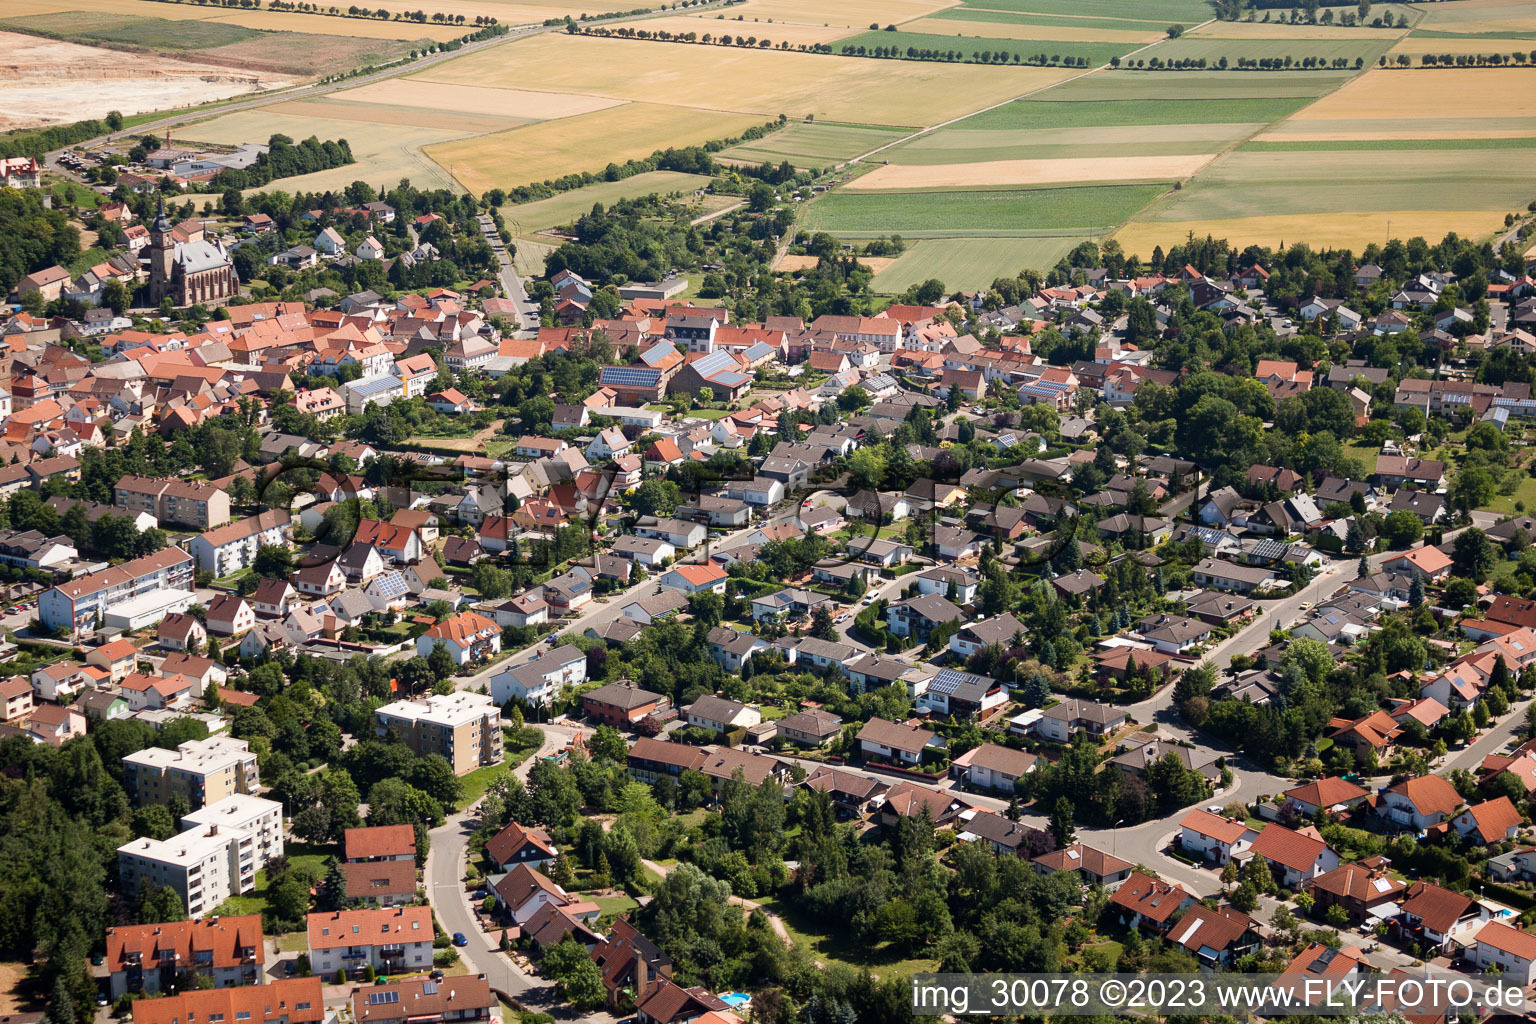 Göllheim im Bundesland Rheinland-Pfalz, Deutschland von oben gesehen